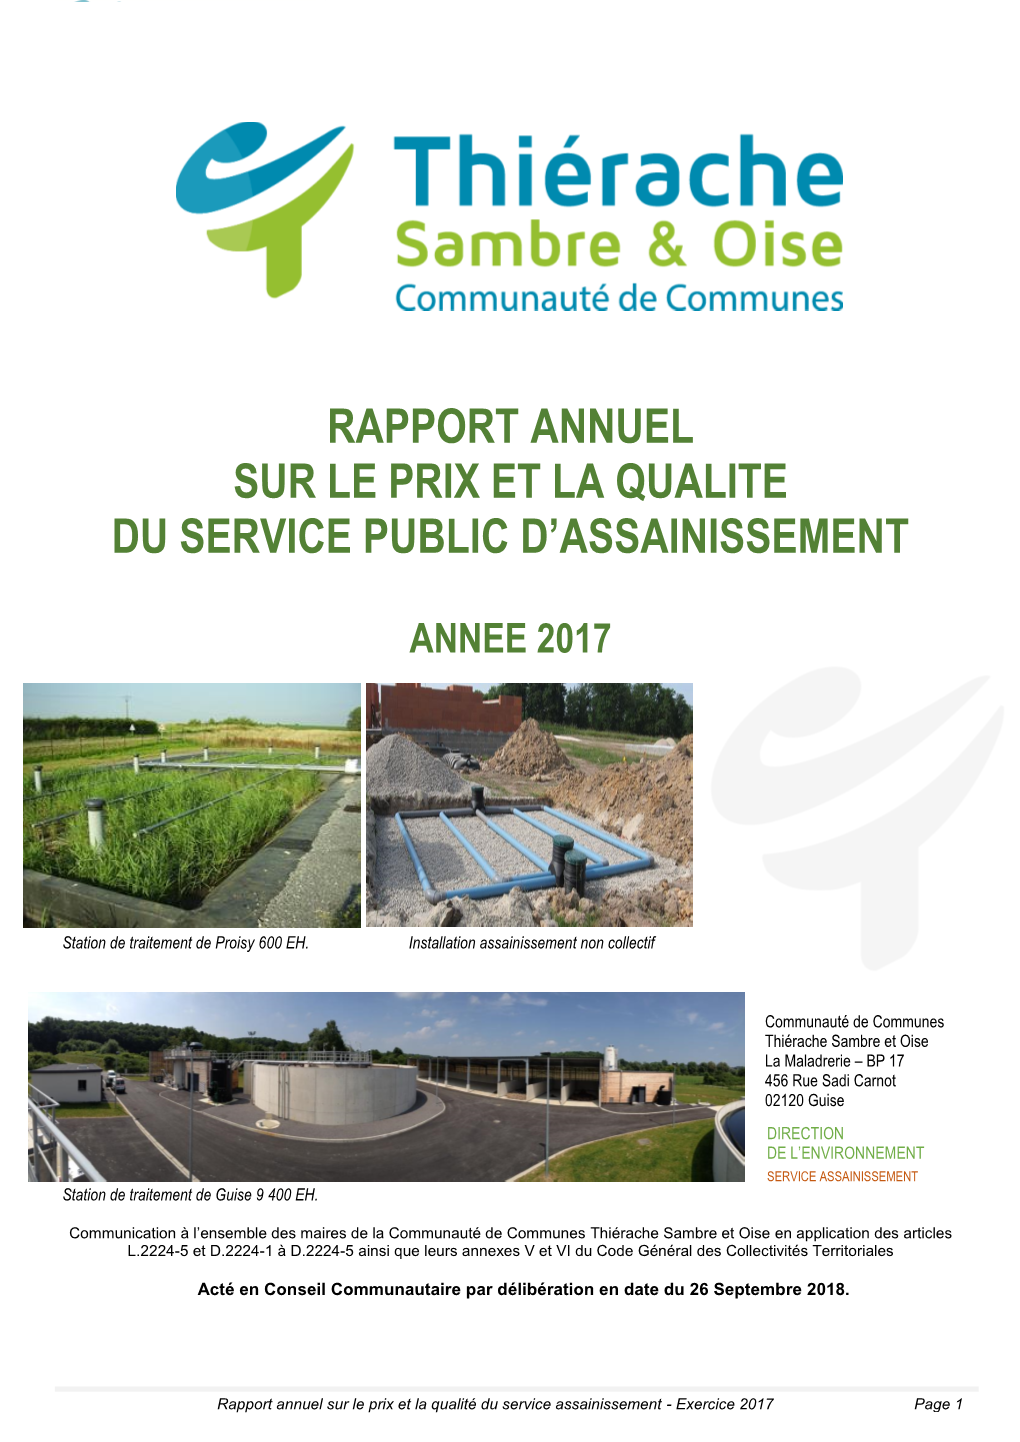 Rapport Annuel Sur Le Prix Et La Qualite Du Service Public D'assainissement